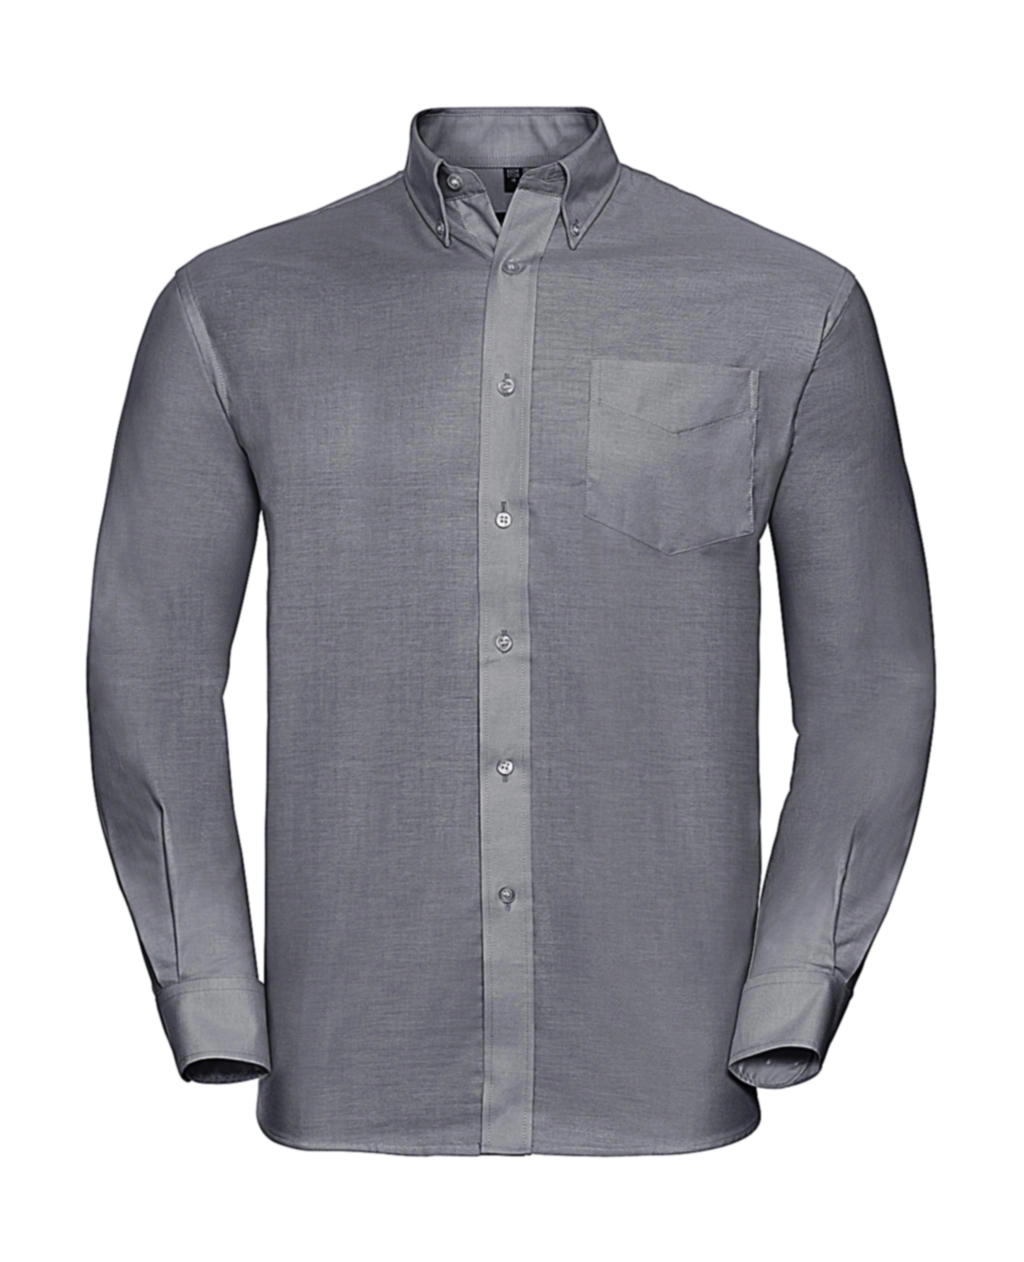 Oxford Shirt LS zum Besticken und Bedrucken in der Farbe Silver mit Ihren Logo, Schriftzug oder Motiv.